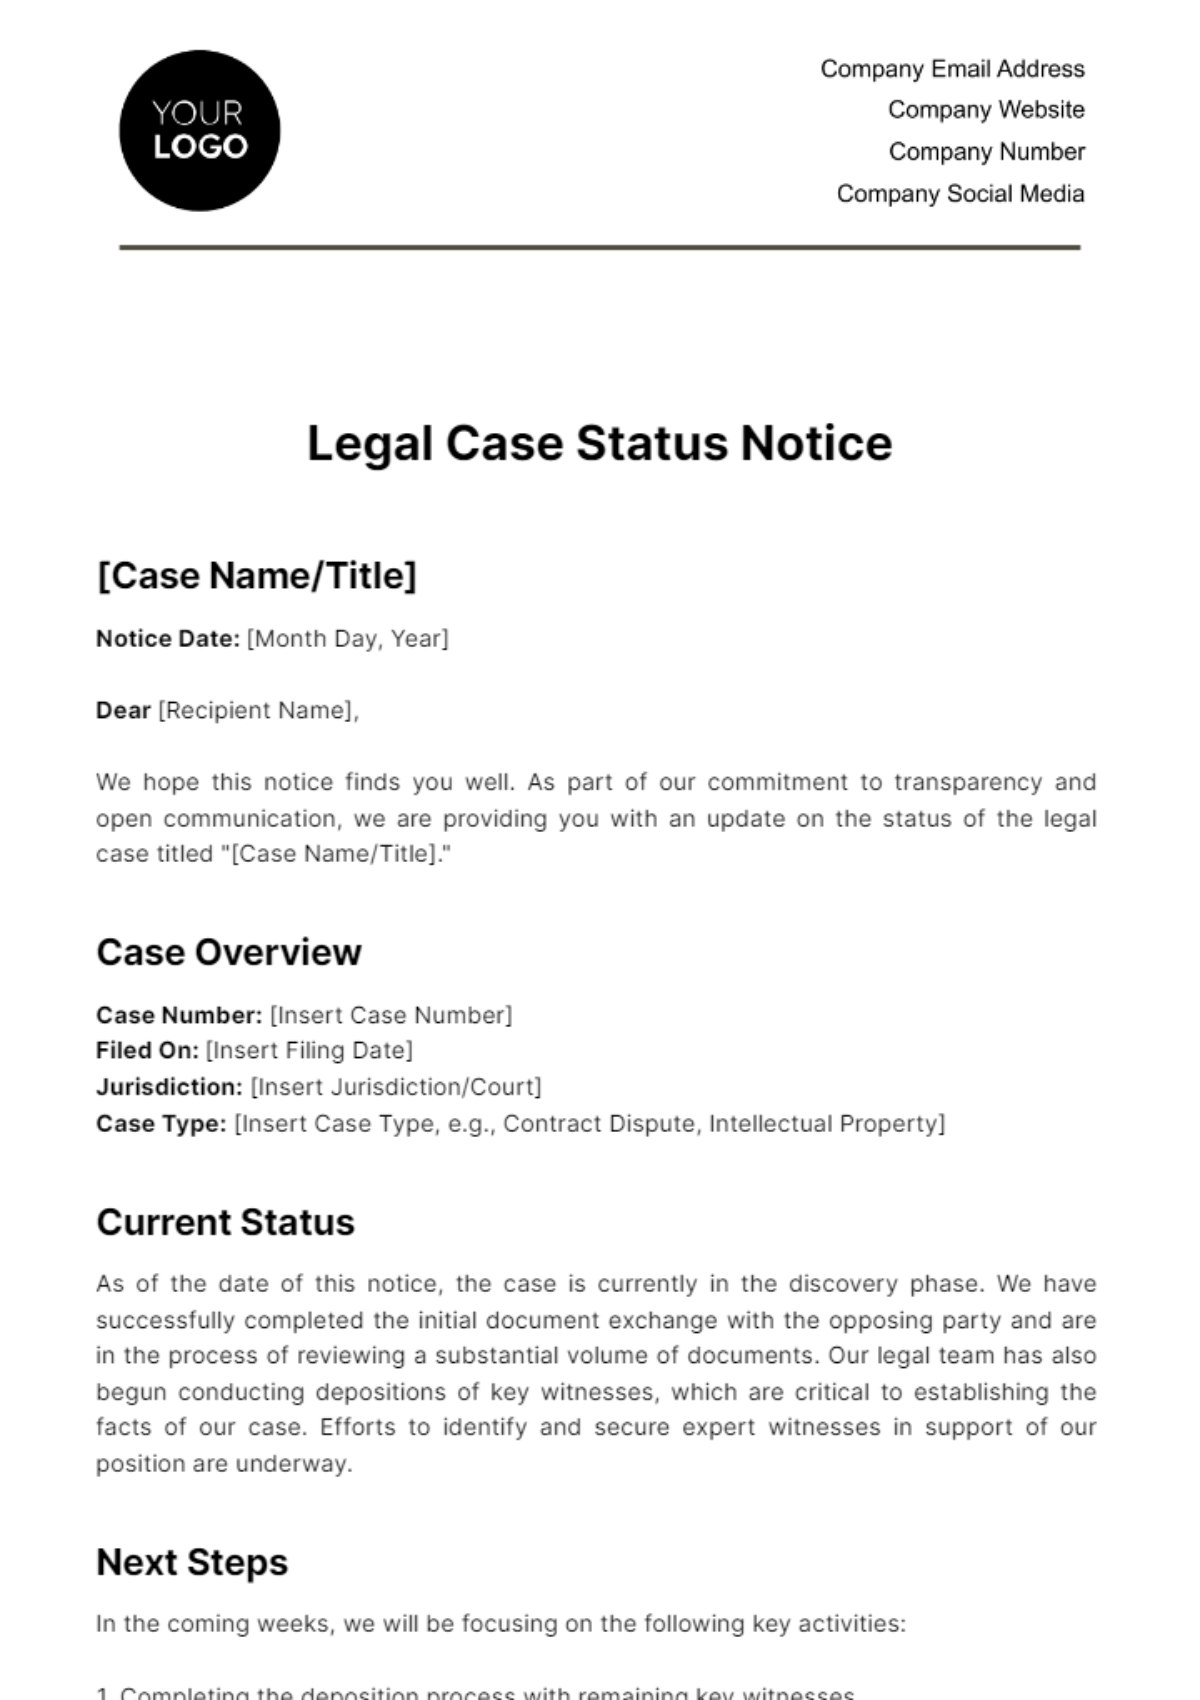 Free Legal Case Status Notice Template